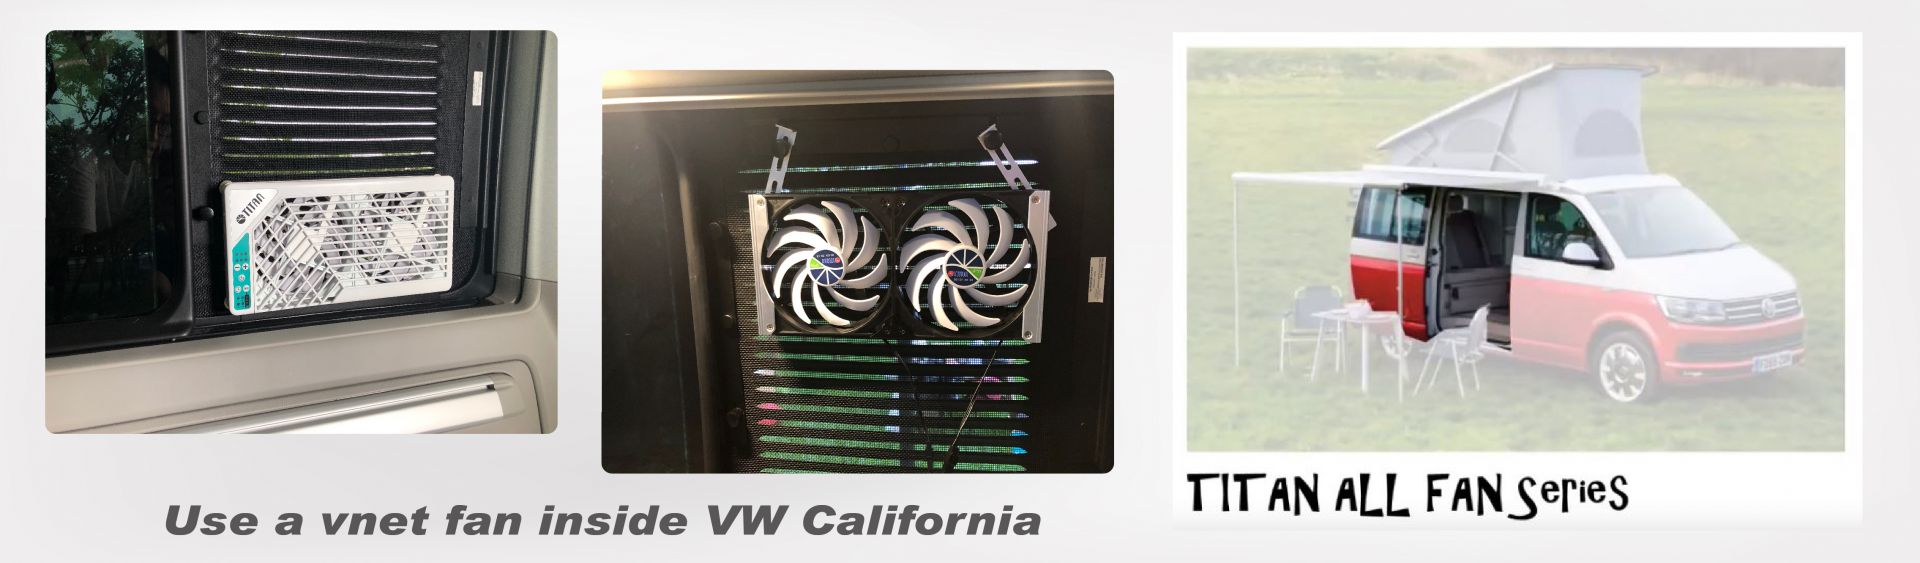 VW 캘리포니아의 내부 환기: 측면 창문